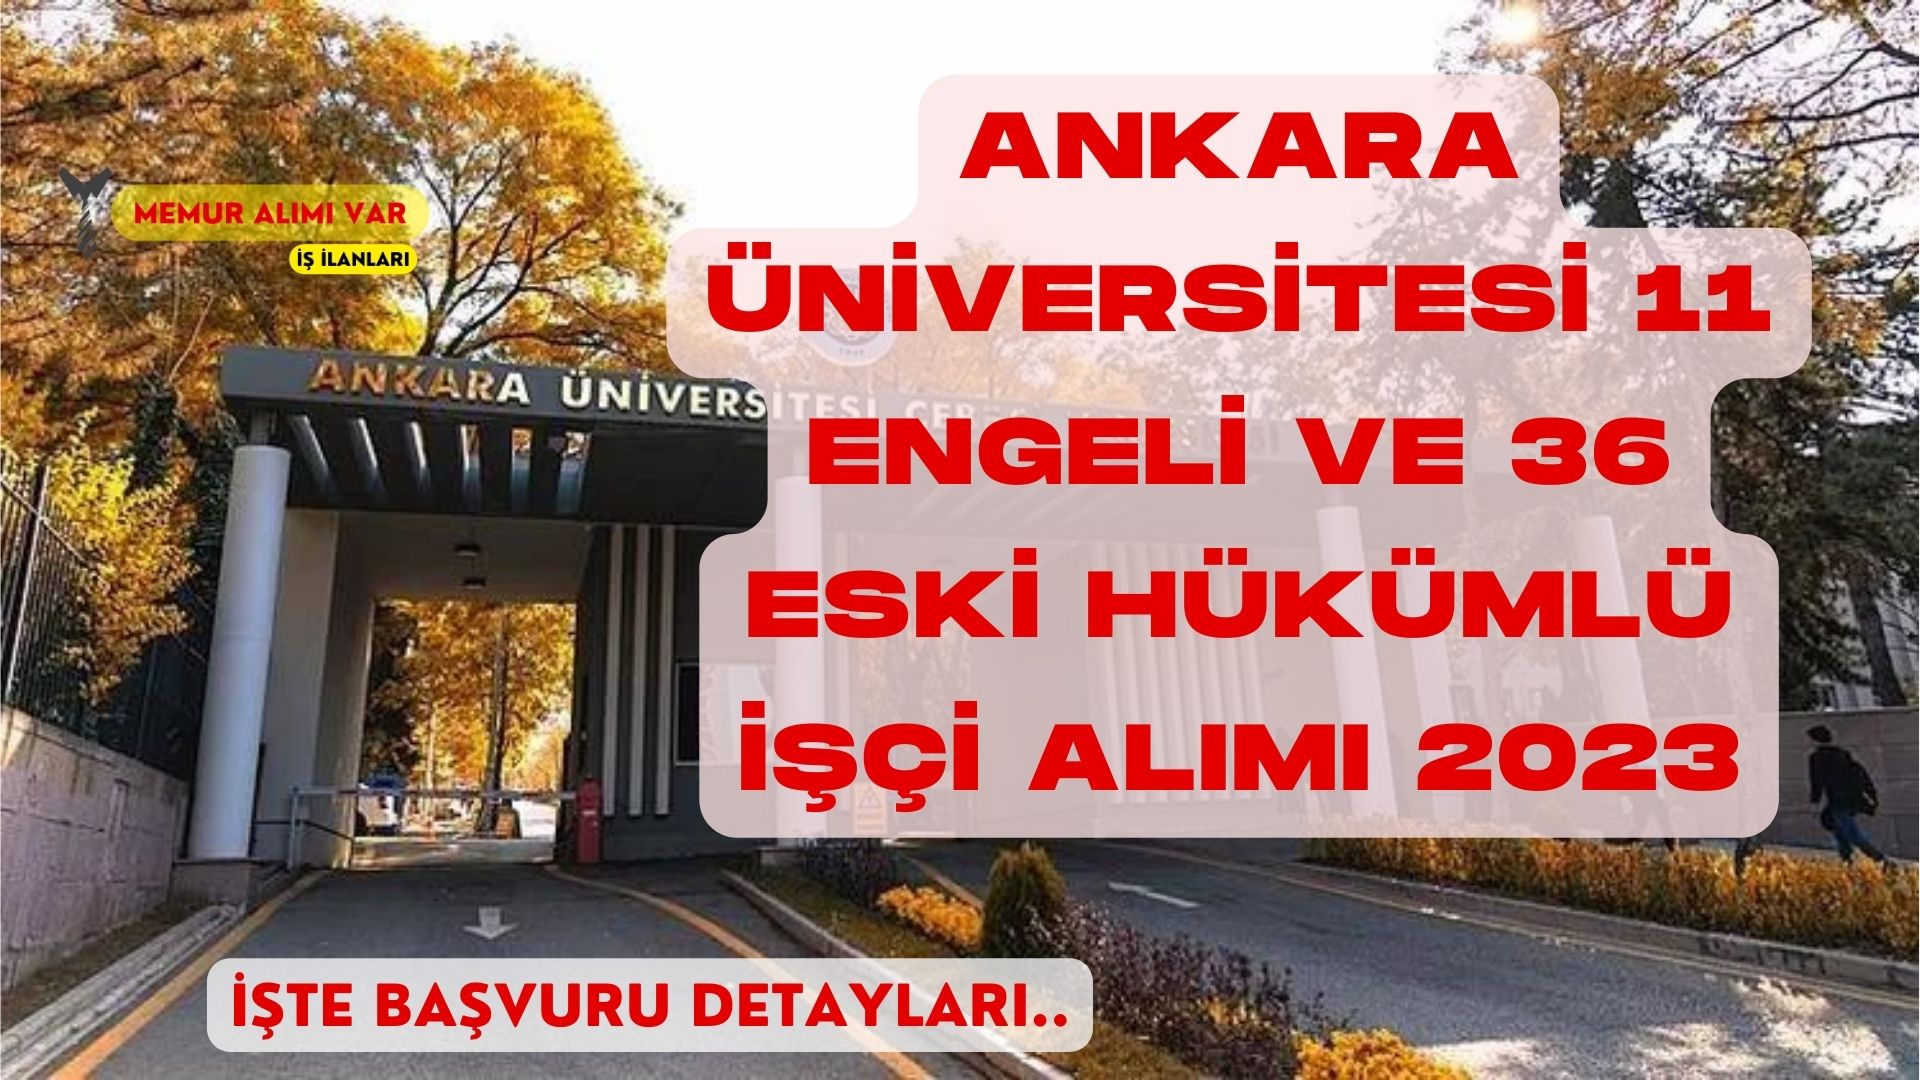 Ankara Üniversitesi 11 Engeli ve 36 Hükümlü İşçi Alımı Yapacak 2023